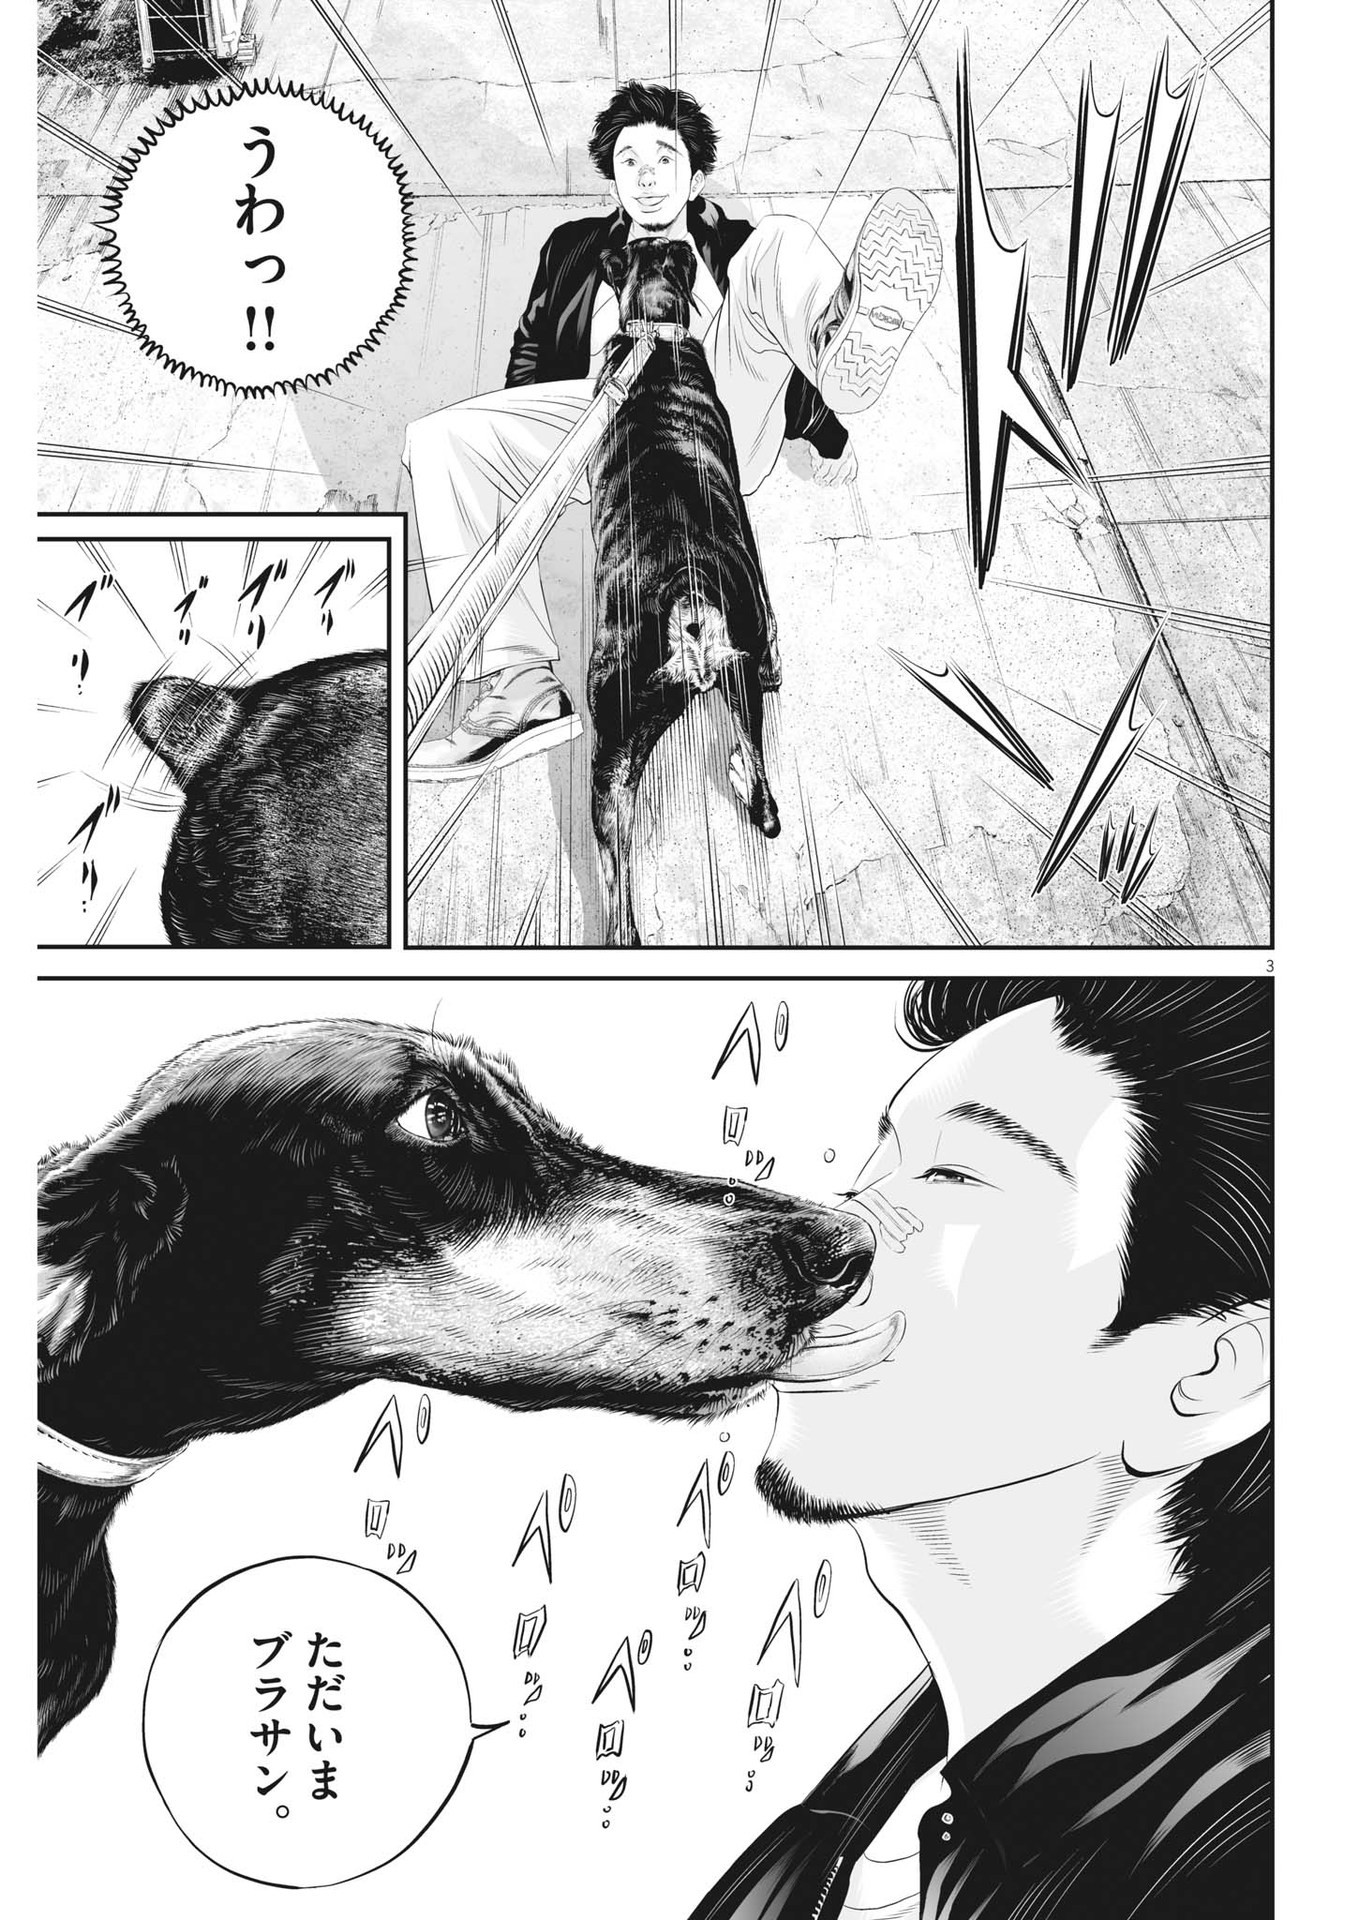 Kujou no Taizai - Chapter 91 - Page 3